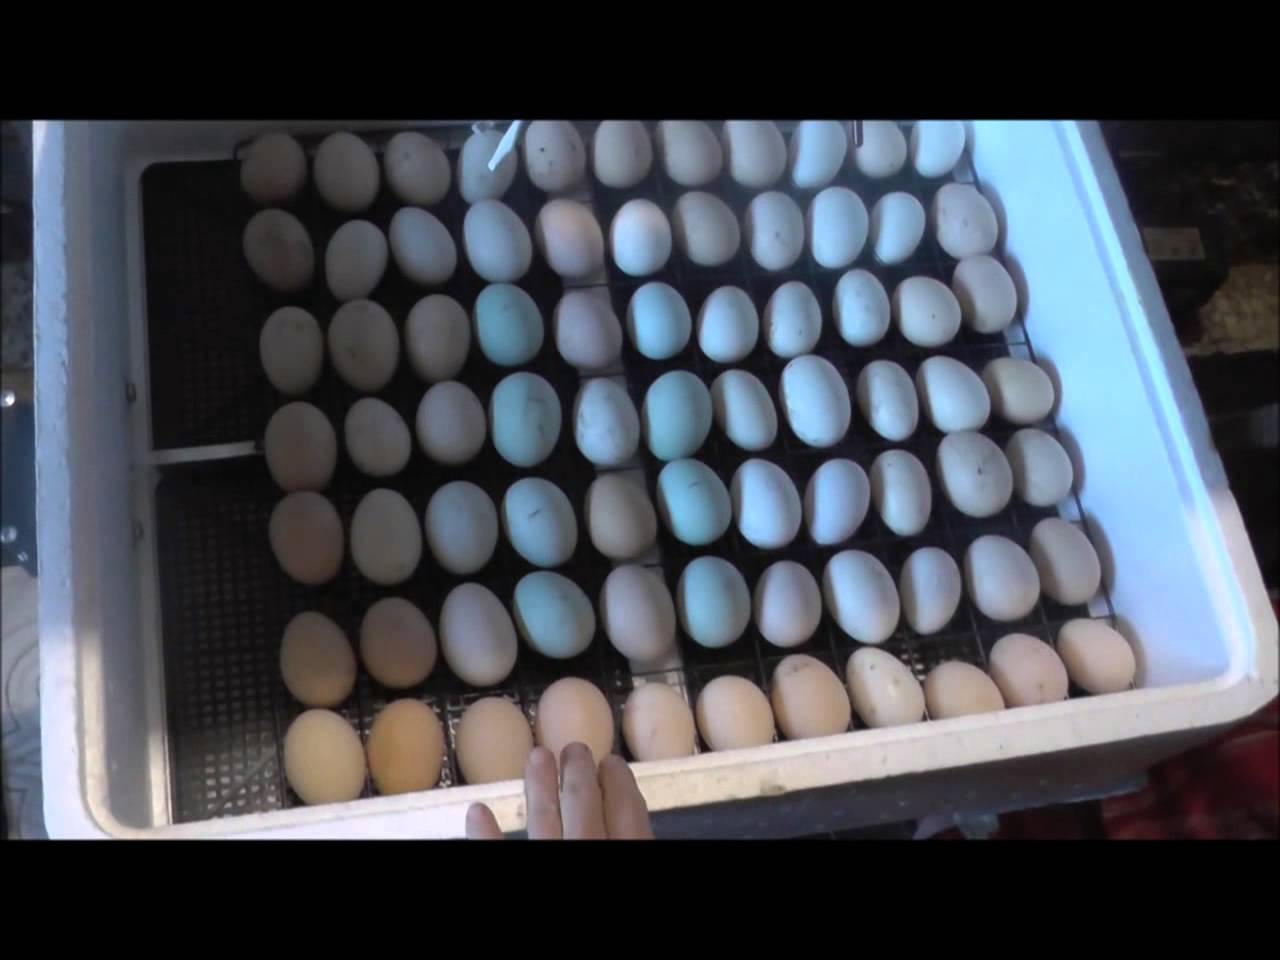 Каким концом закладывать яйца в инкубатор. Инкубатор би-2 104 яйца. Инкубатор Несушка би-1 би-2. Решётка для утиных яиц в инкубатор Несушка би 2. Инкубатор Несушка би 1 би 2 инкубация утиных яиц.